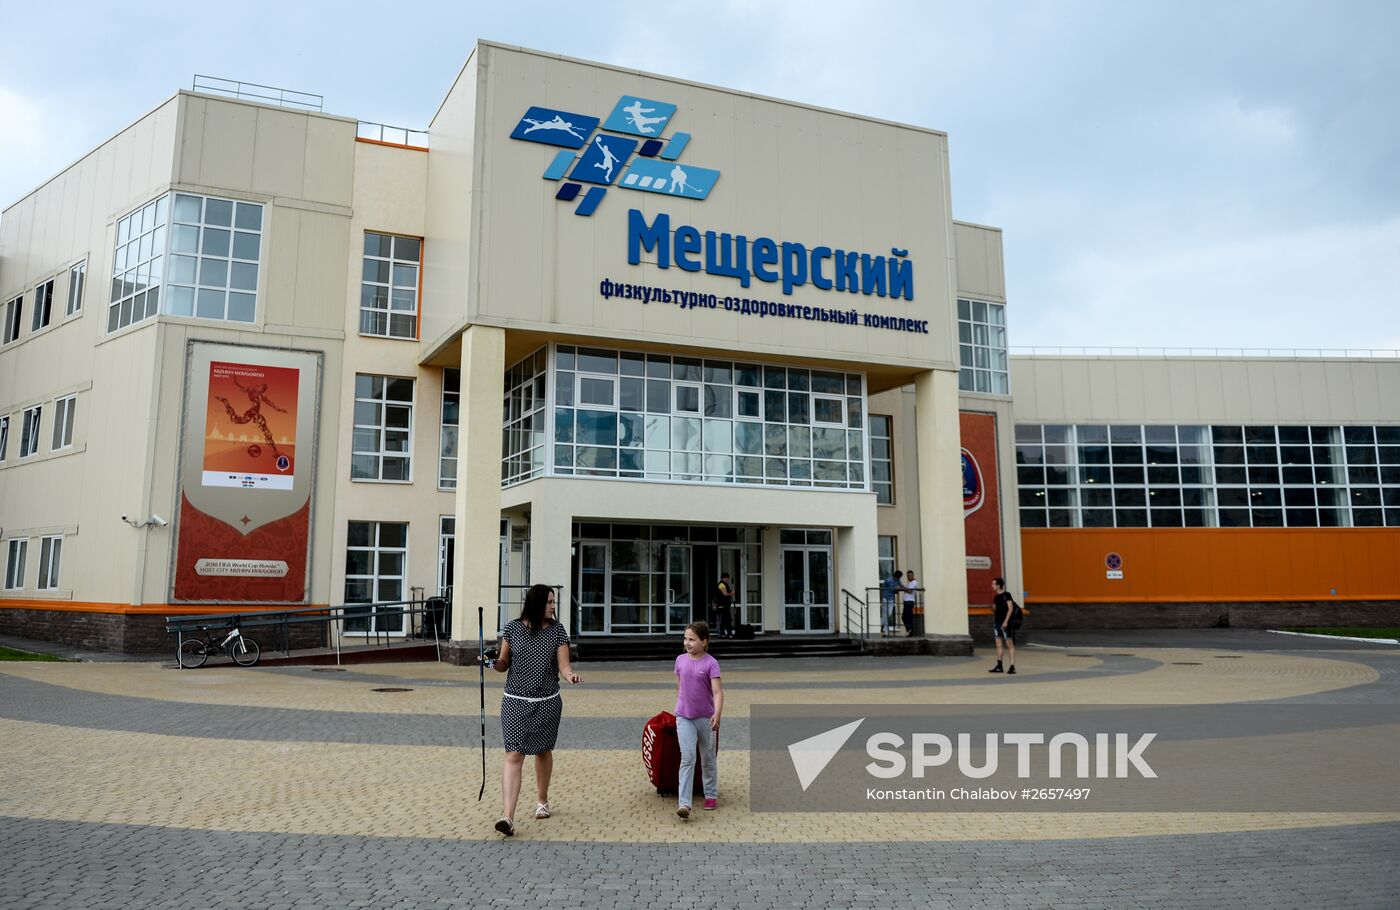 Meshchersky fitness and rehabilitation center